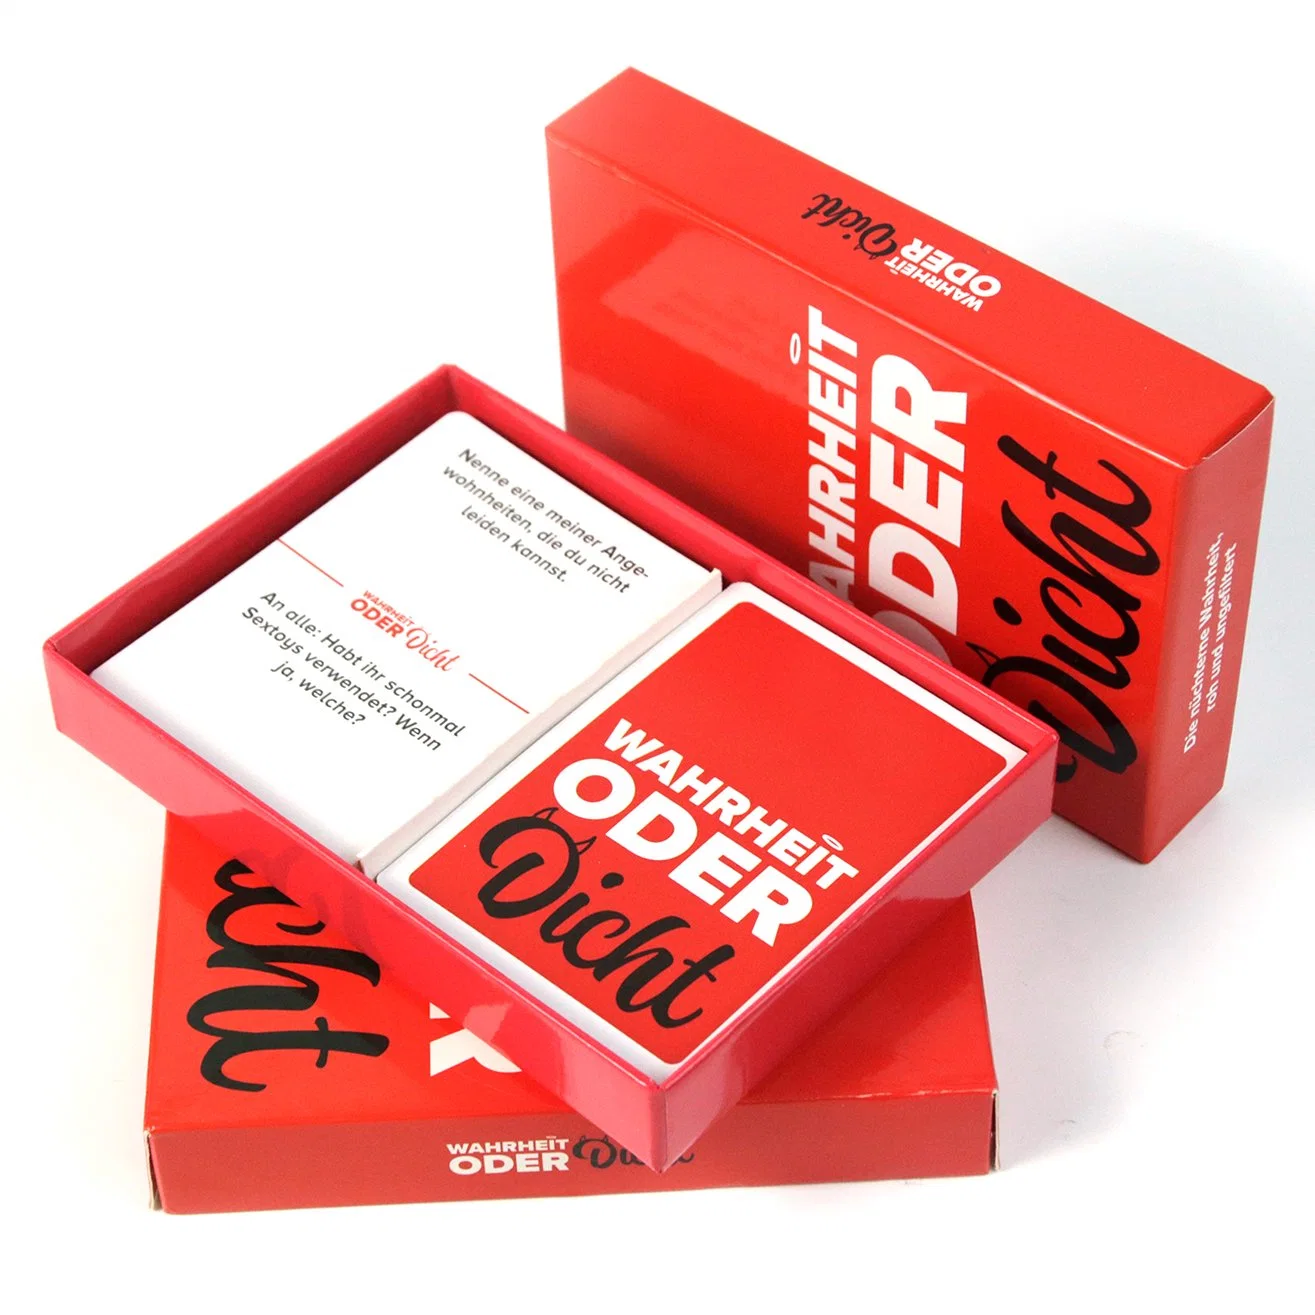 Atacado preço barato Tarot cartões de jogo Personalizado impresso Design de Luxo Jogos de cartas de jogo em papel com Manual de instruções